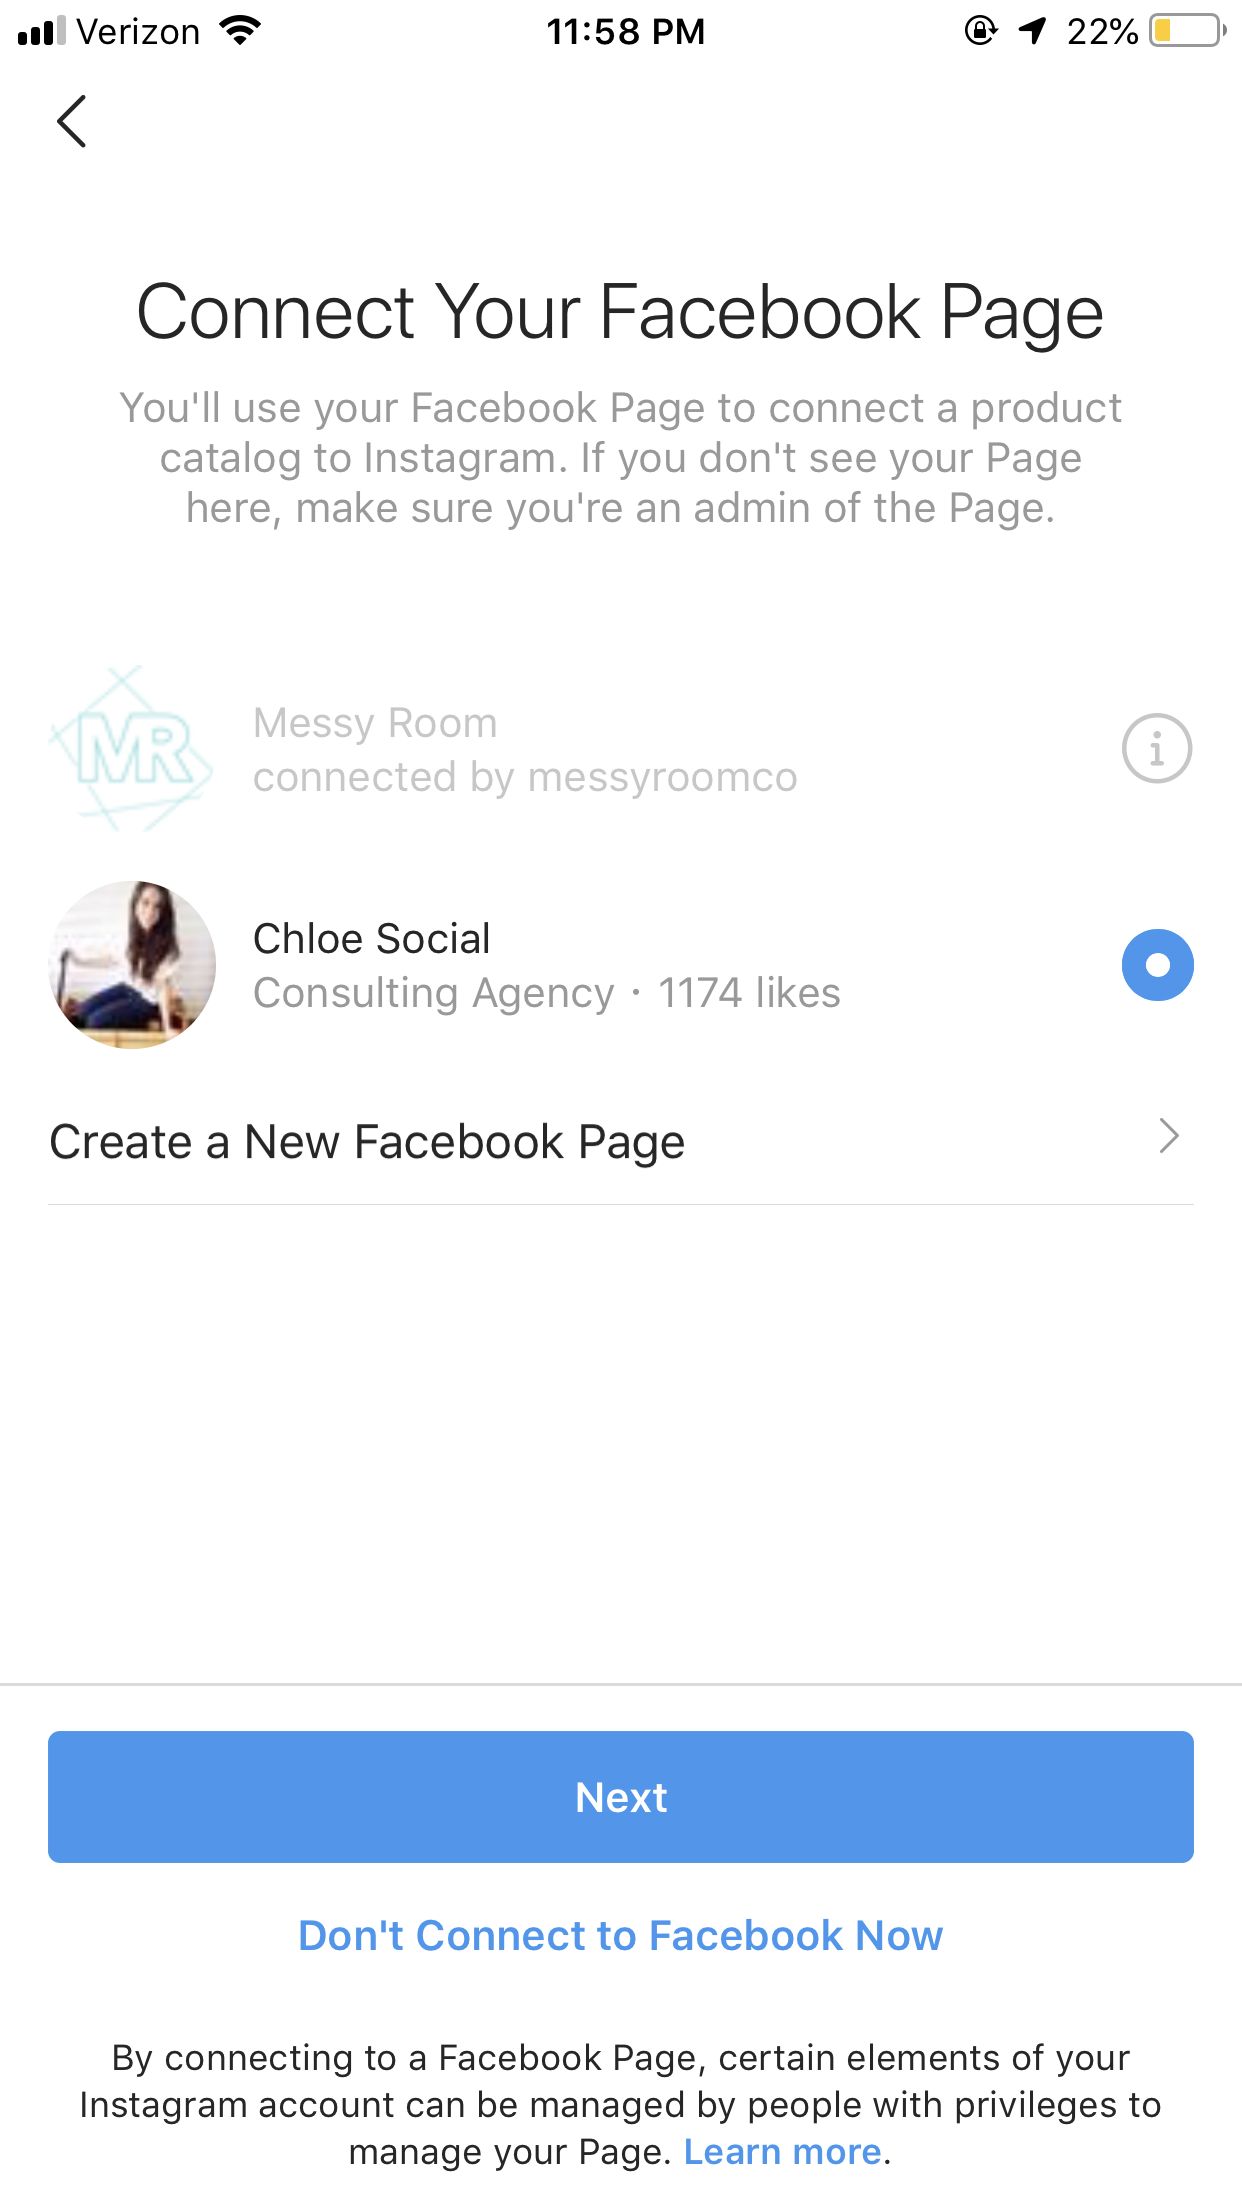 cuenta comercial de instagram - conecta tu página de facebook